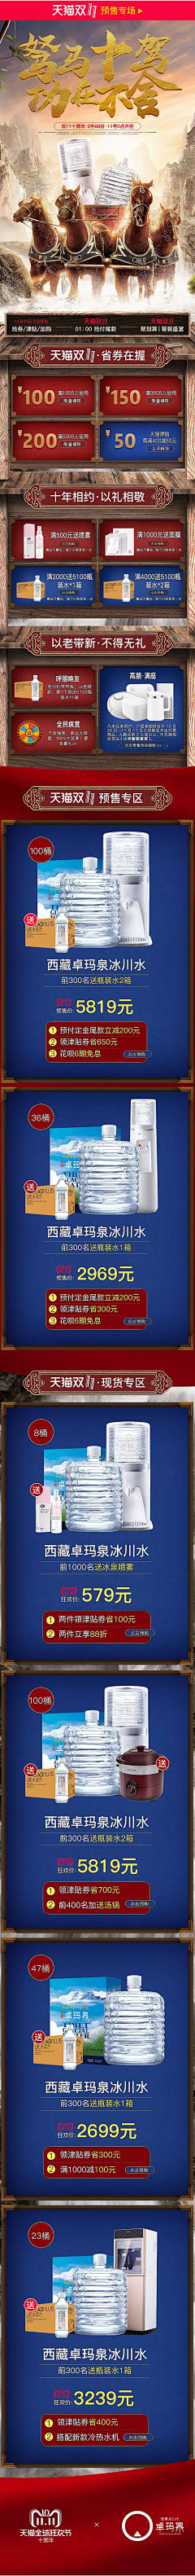 zhangbubu123456采集到2018双十一预售